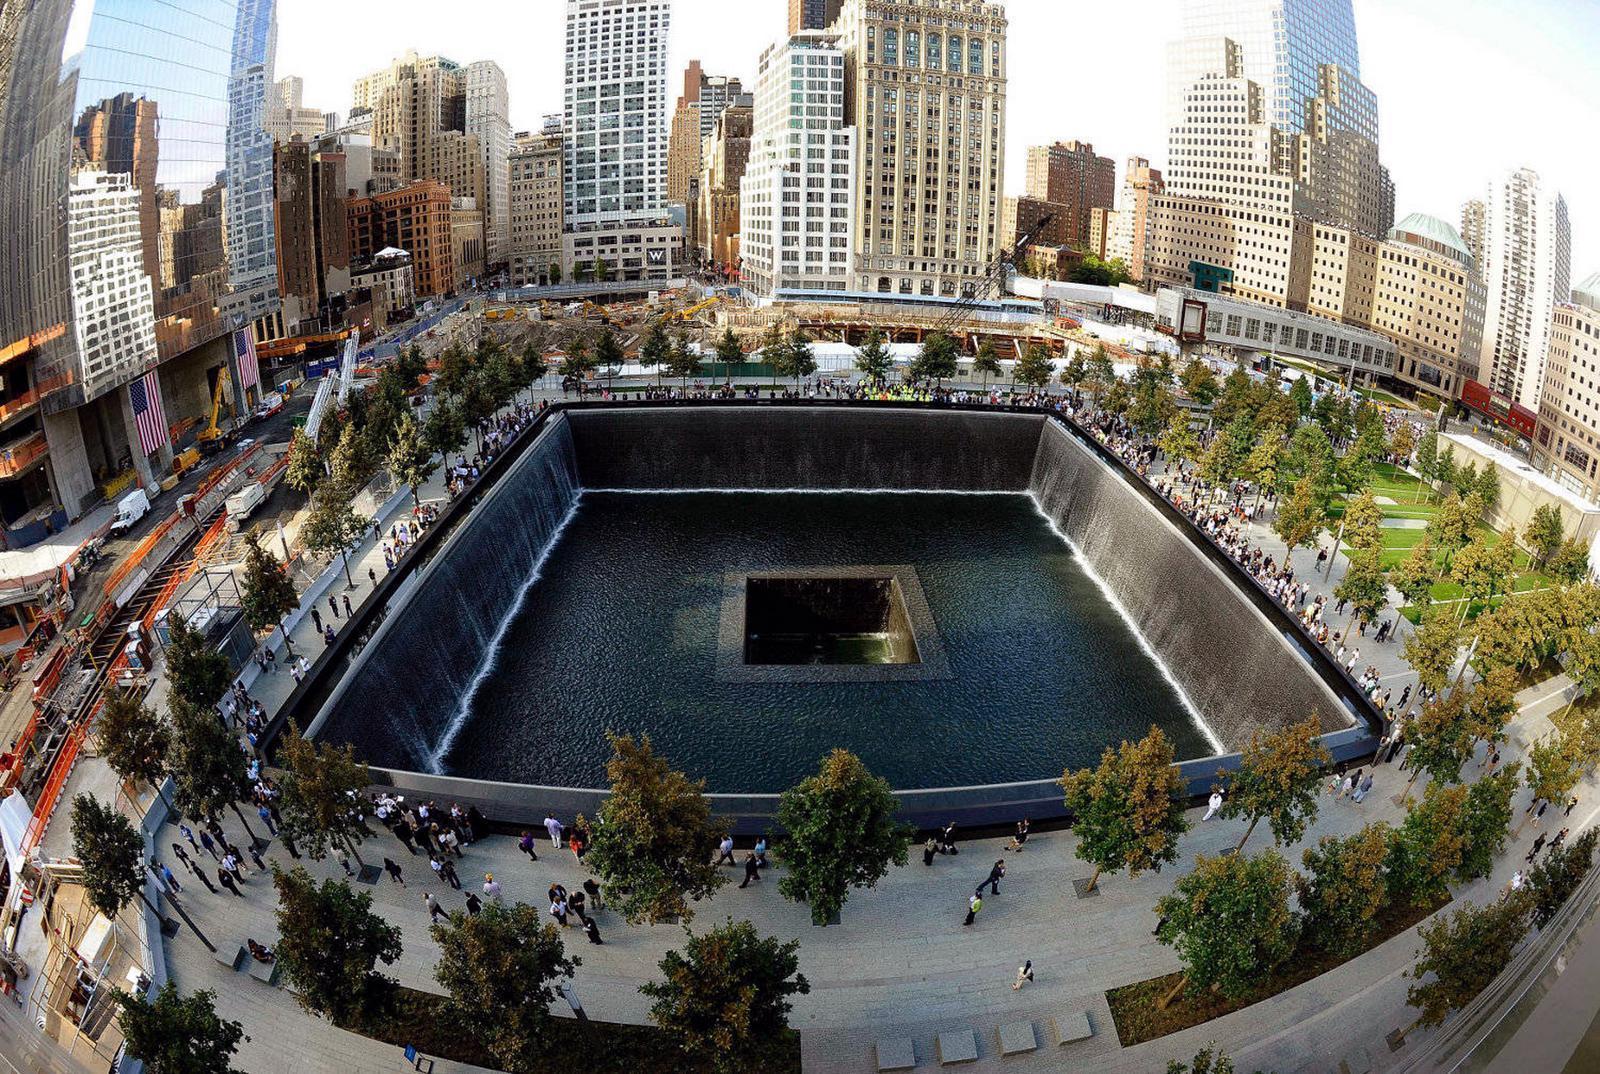 image For > September 11 Wallpaper